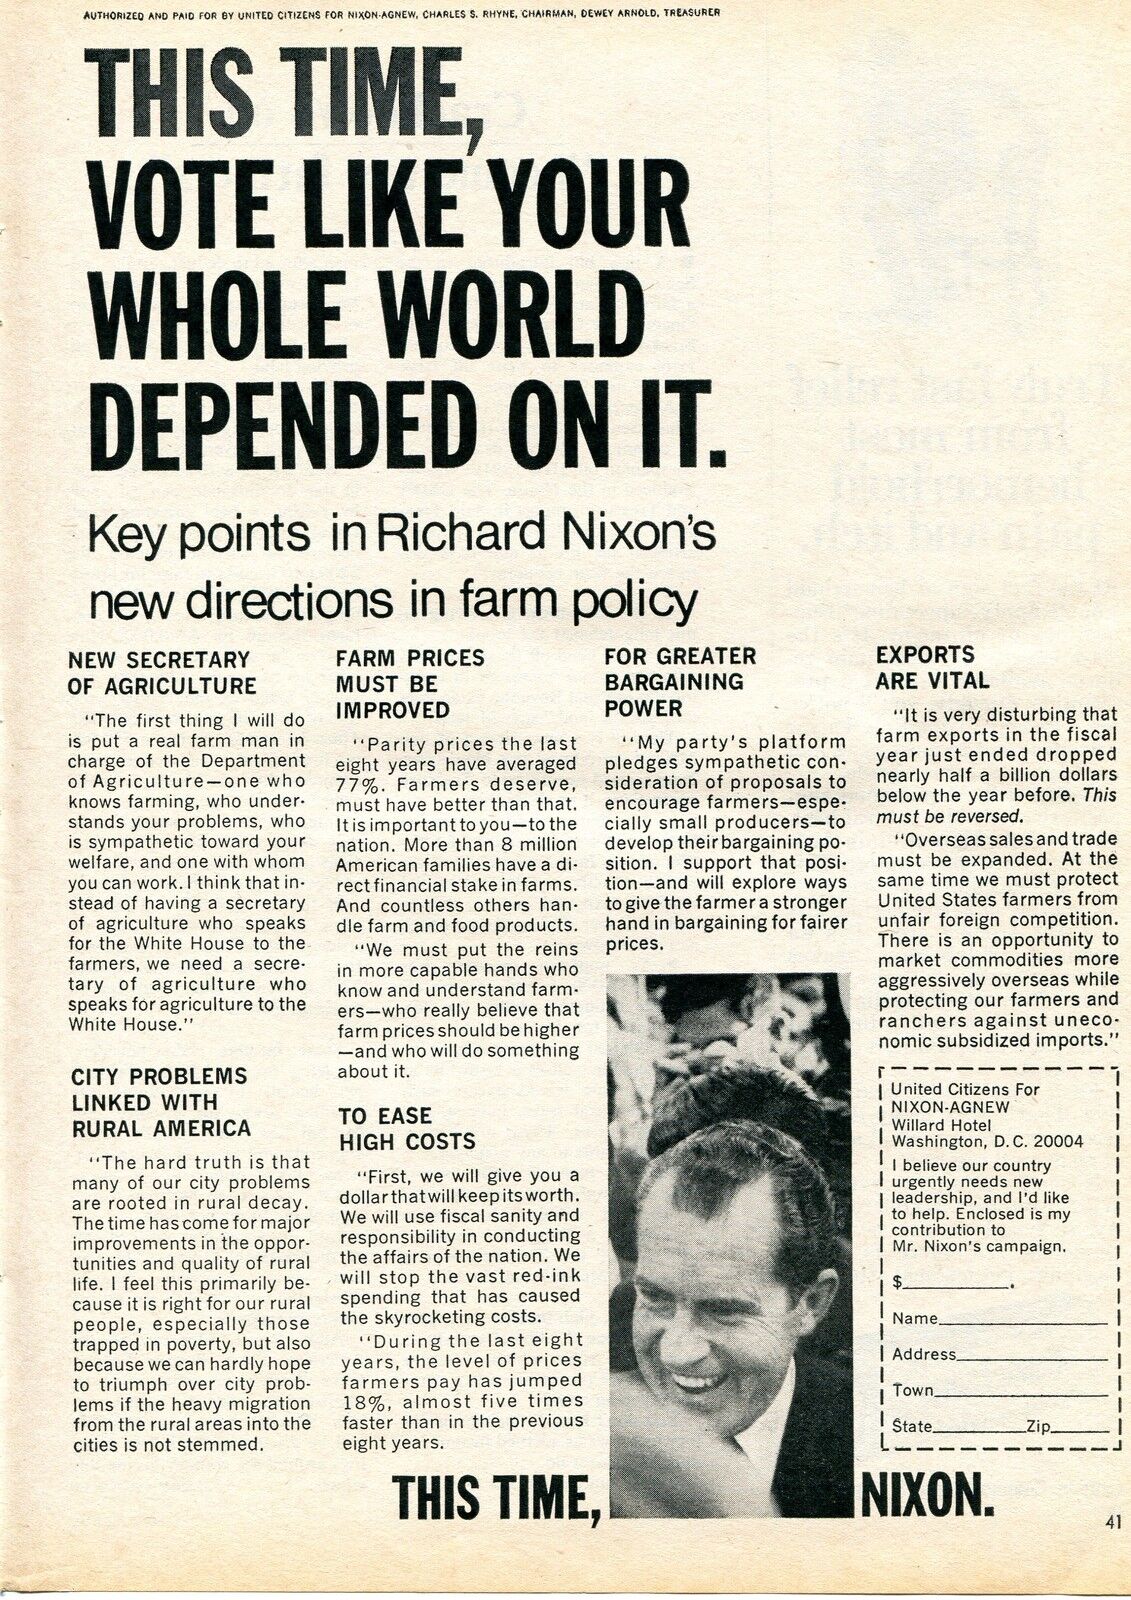 1968 Print Ad Richard Nixon Farm Policy Campaign Fund Citizens For Nixon-Agnew